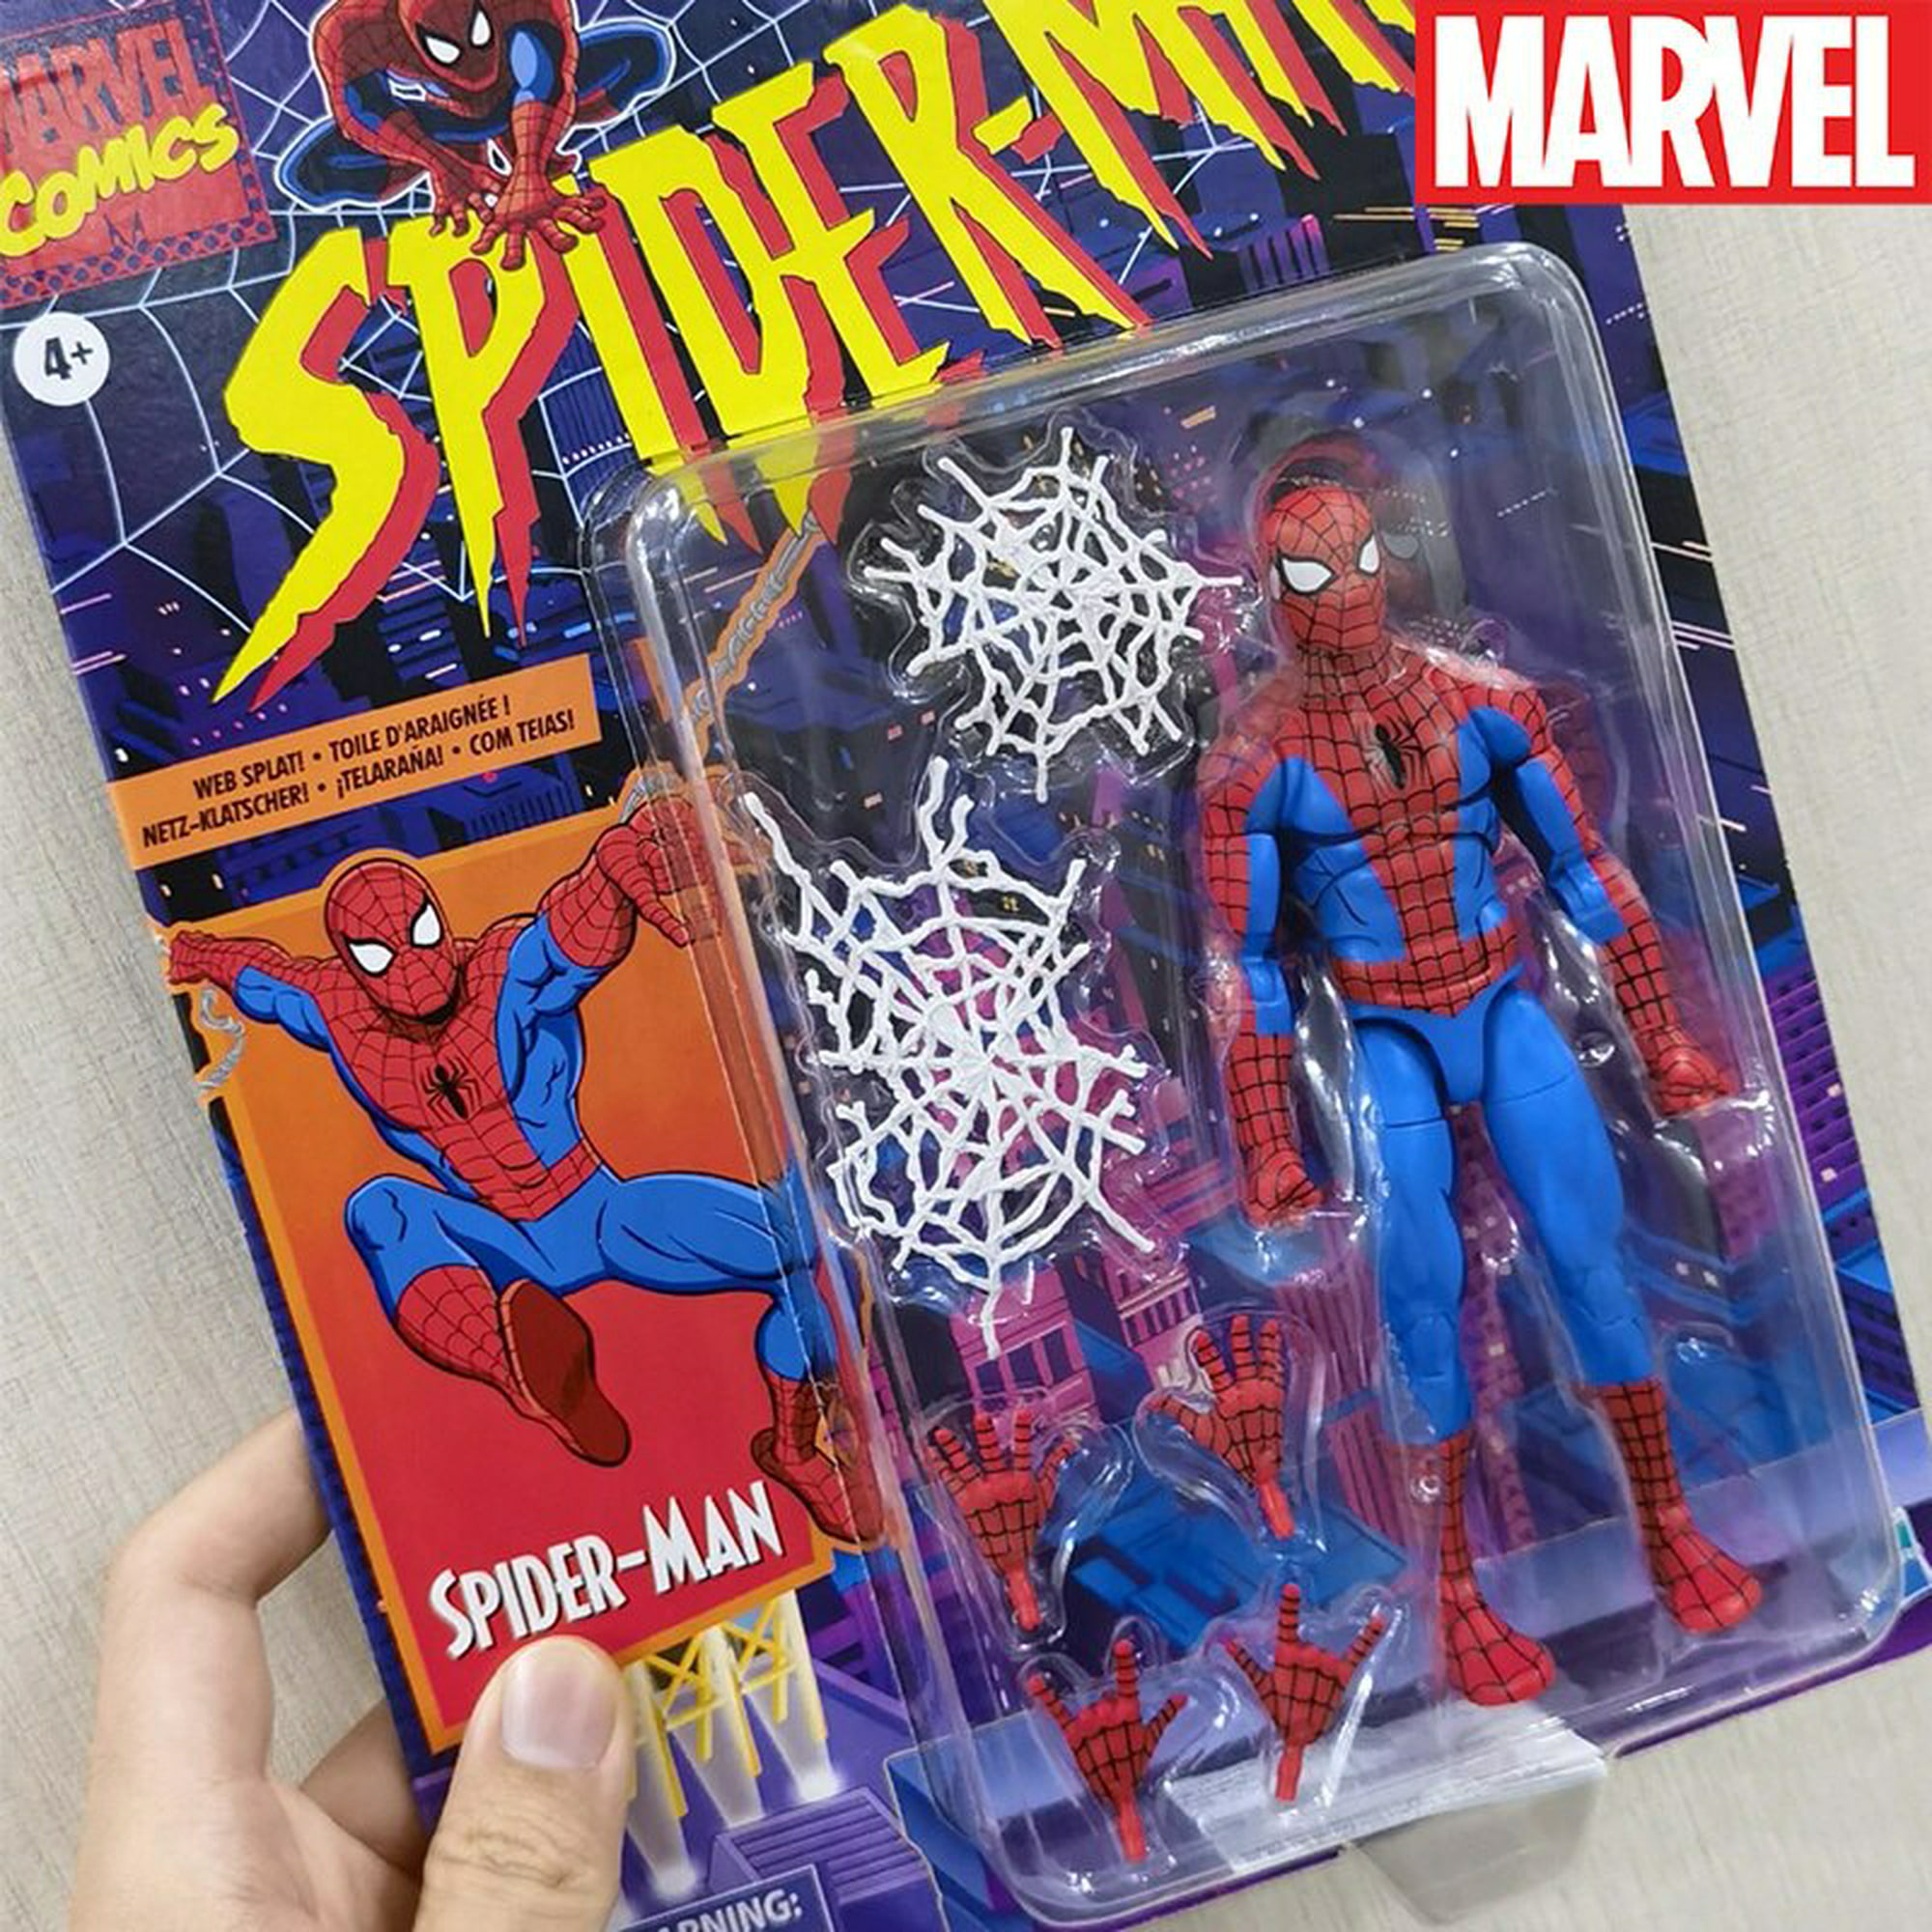 Figuras de acción de Marvel Legends, minifiguras de Anime Retro de Spiderman,  estatua de PVC, modelo de muñeca, juguetes de decoración para niños, regalo  Fivean unisex